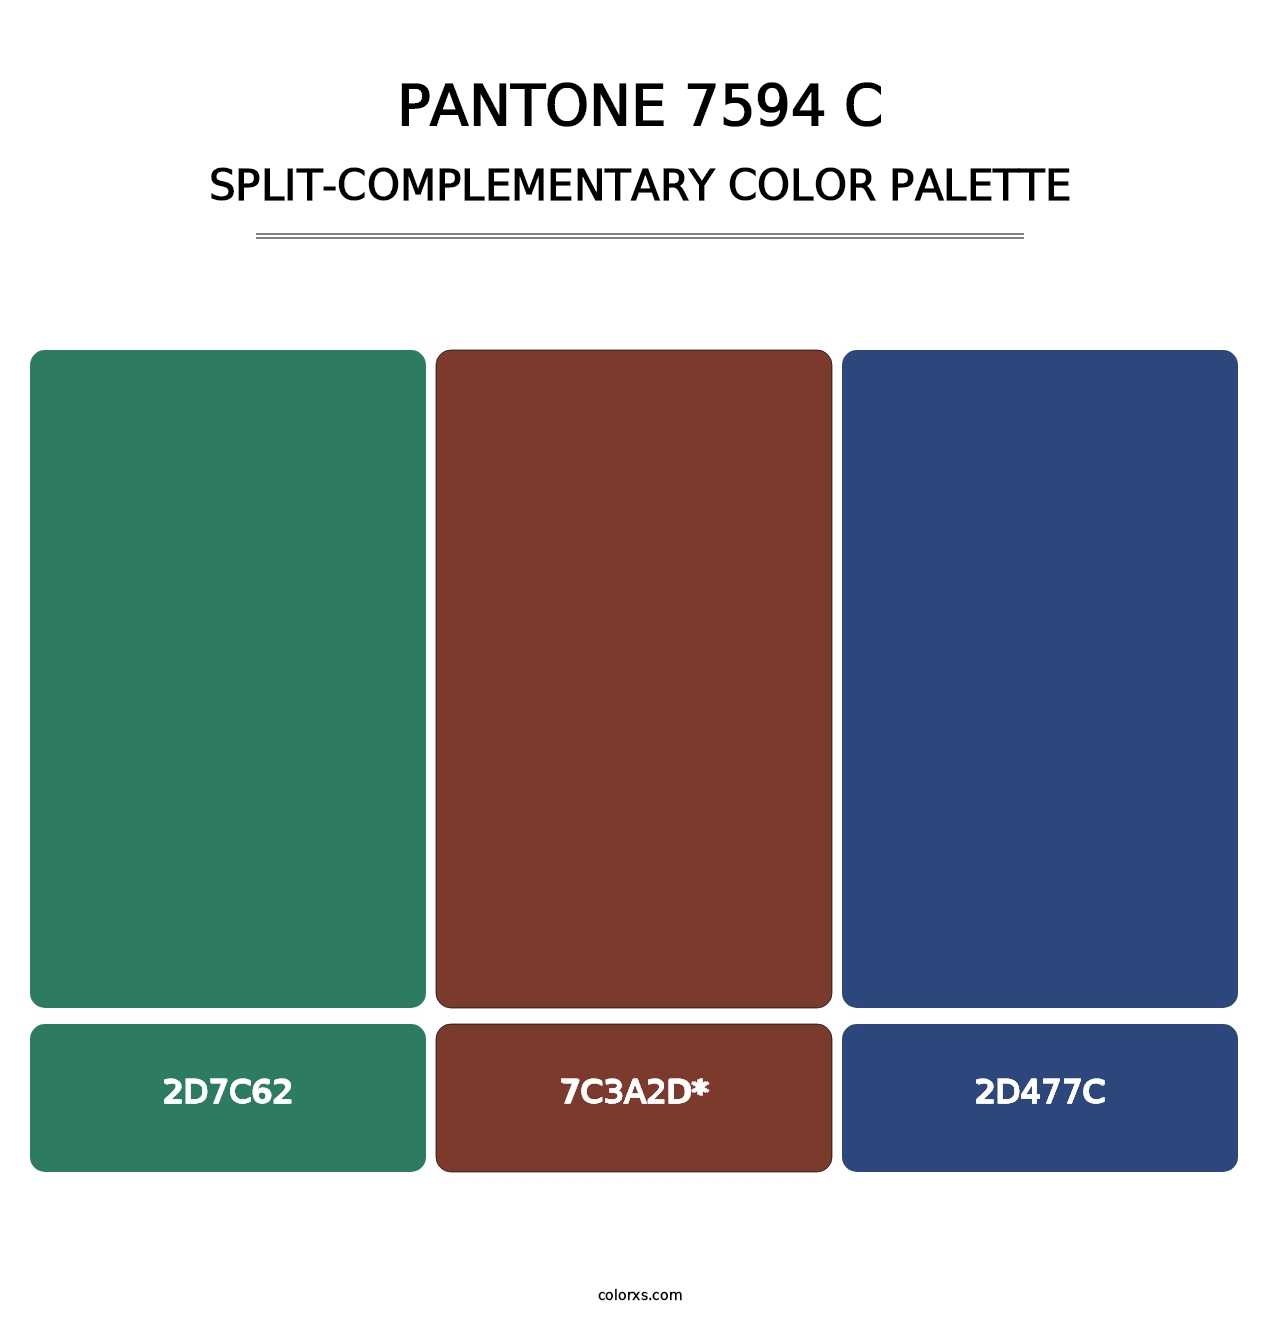 PANTONE 7594 C - Split-Complementary Color Palette